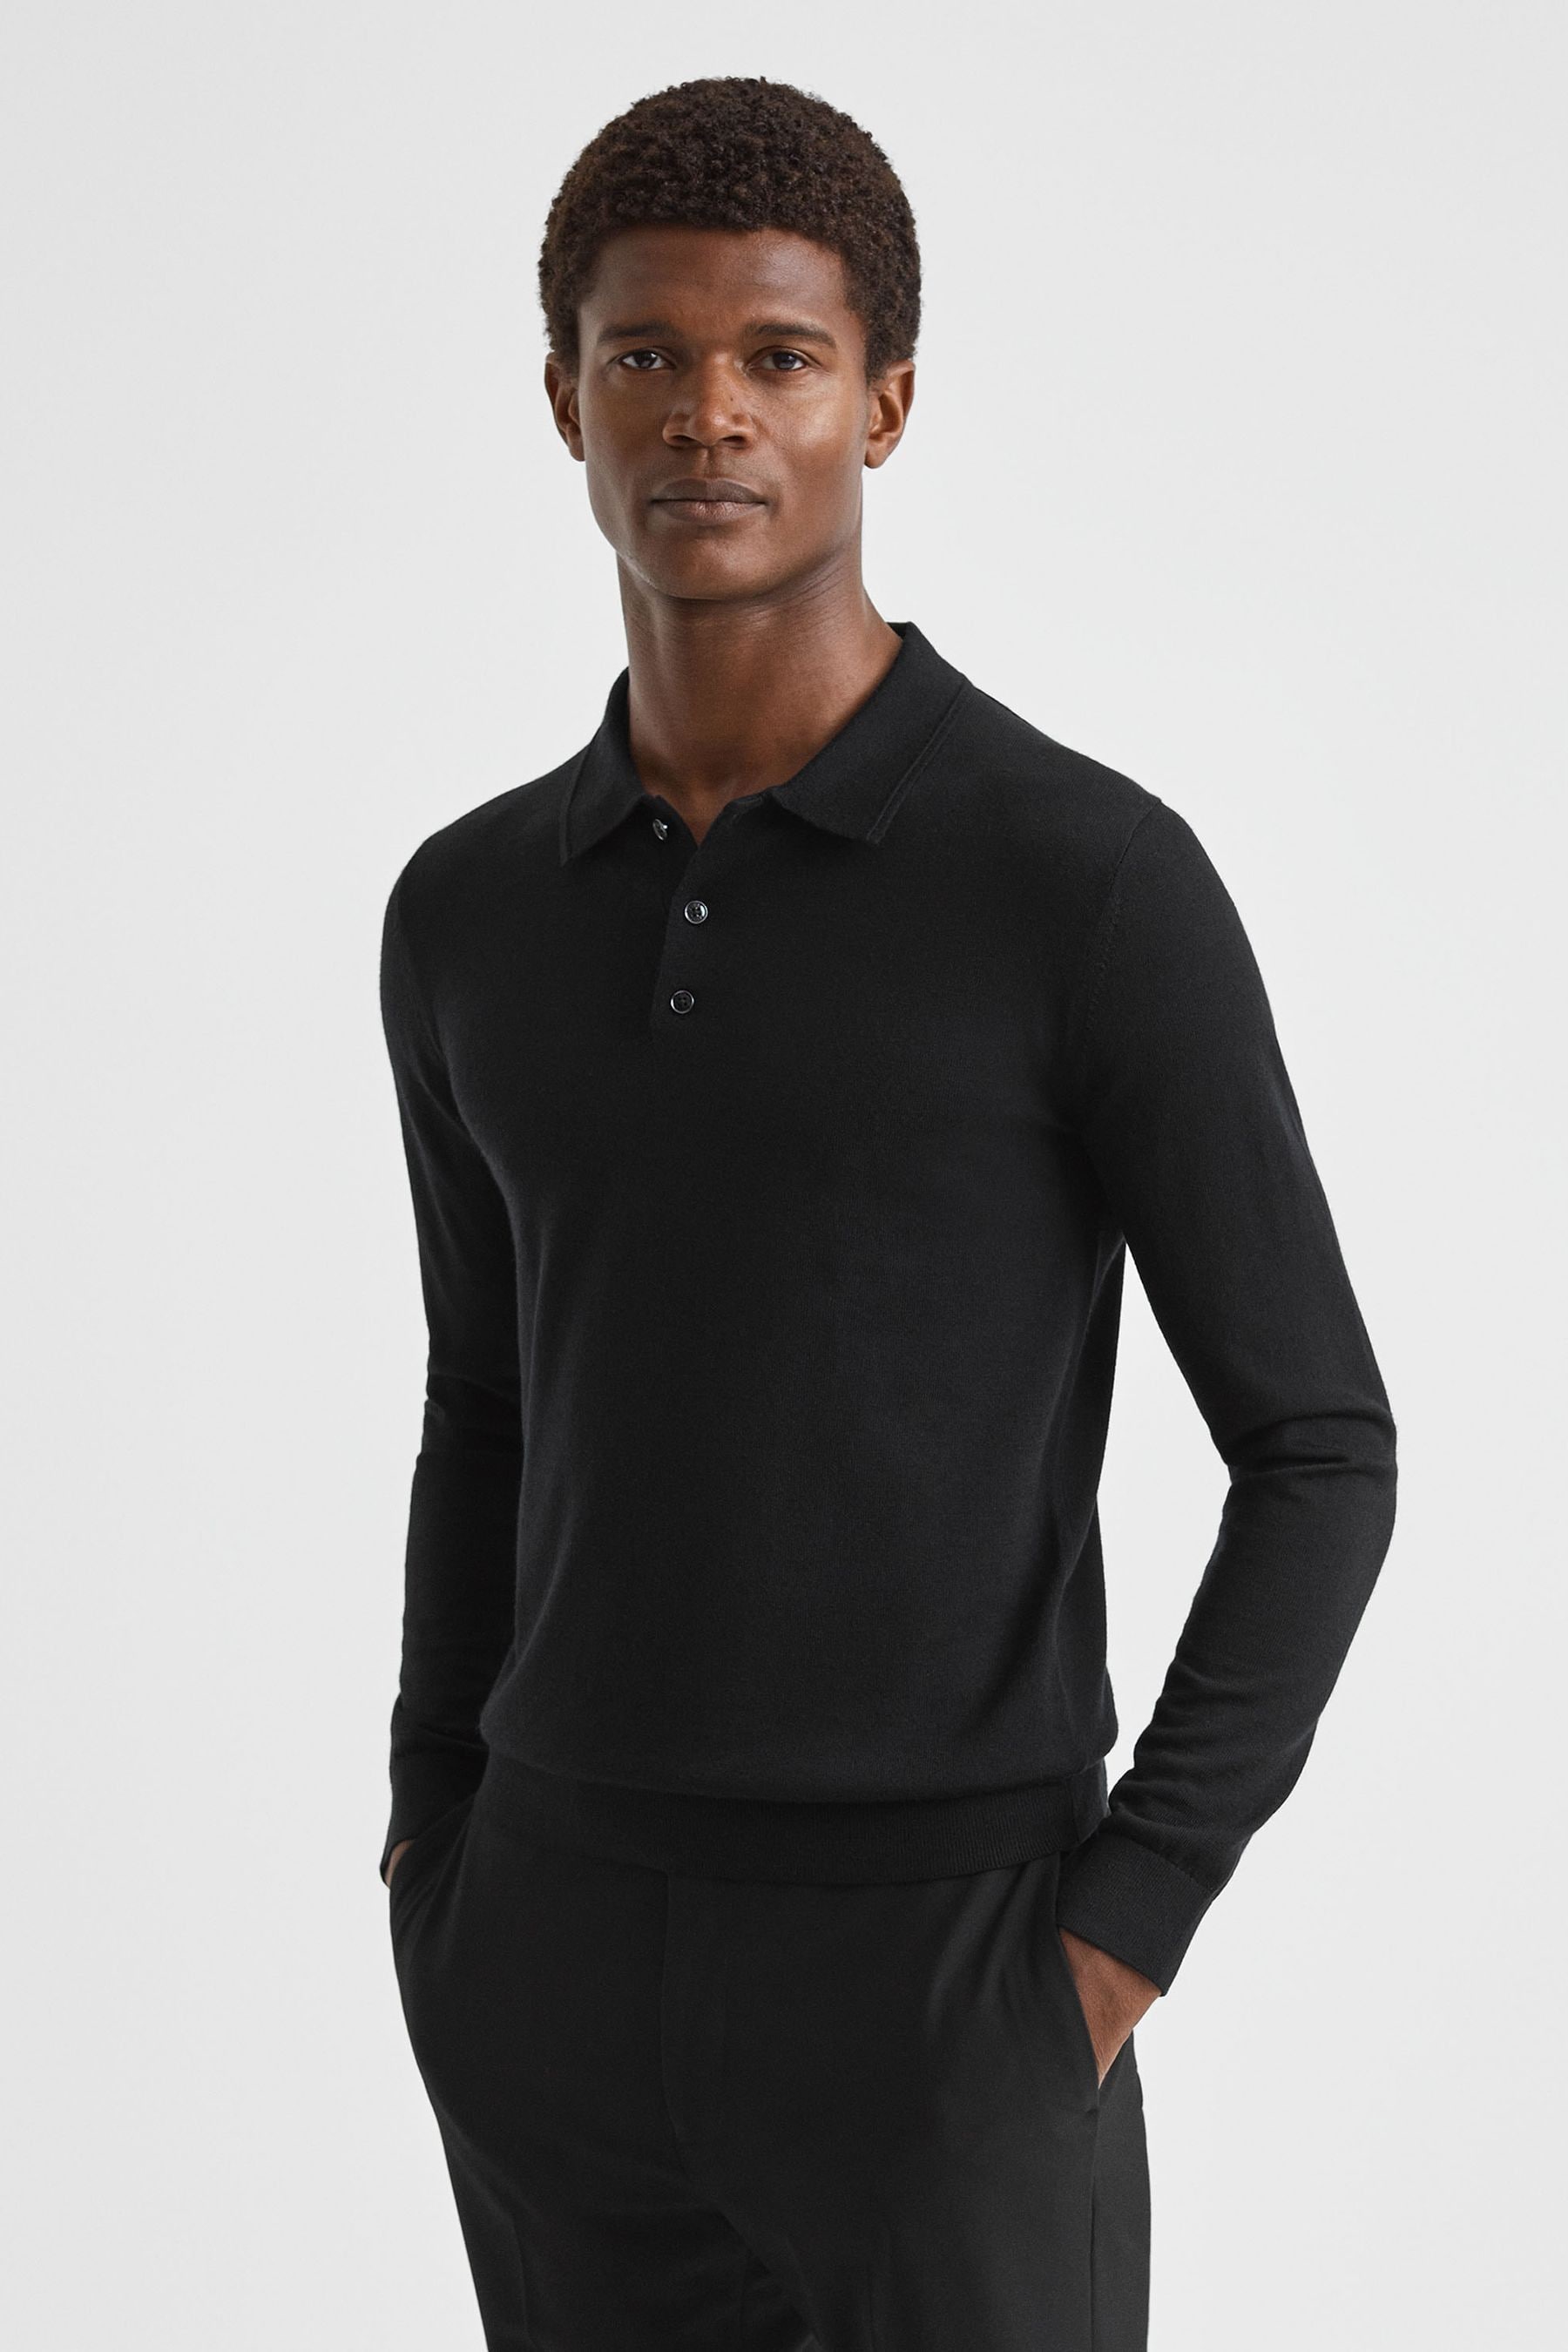 Reiss Trafford - Black Merino Wool Polo Shirt, M